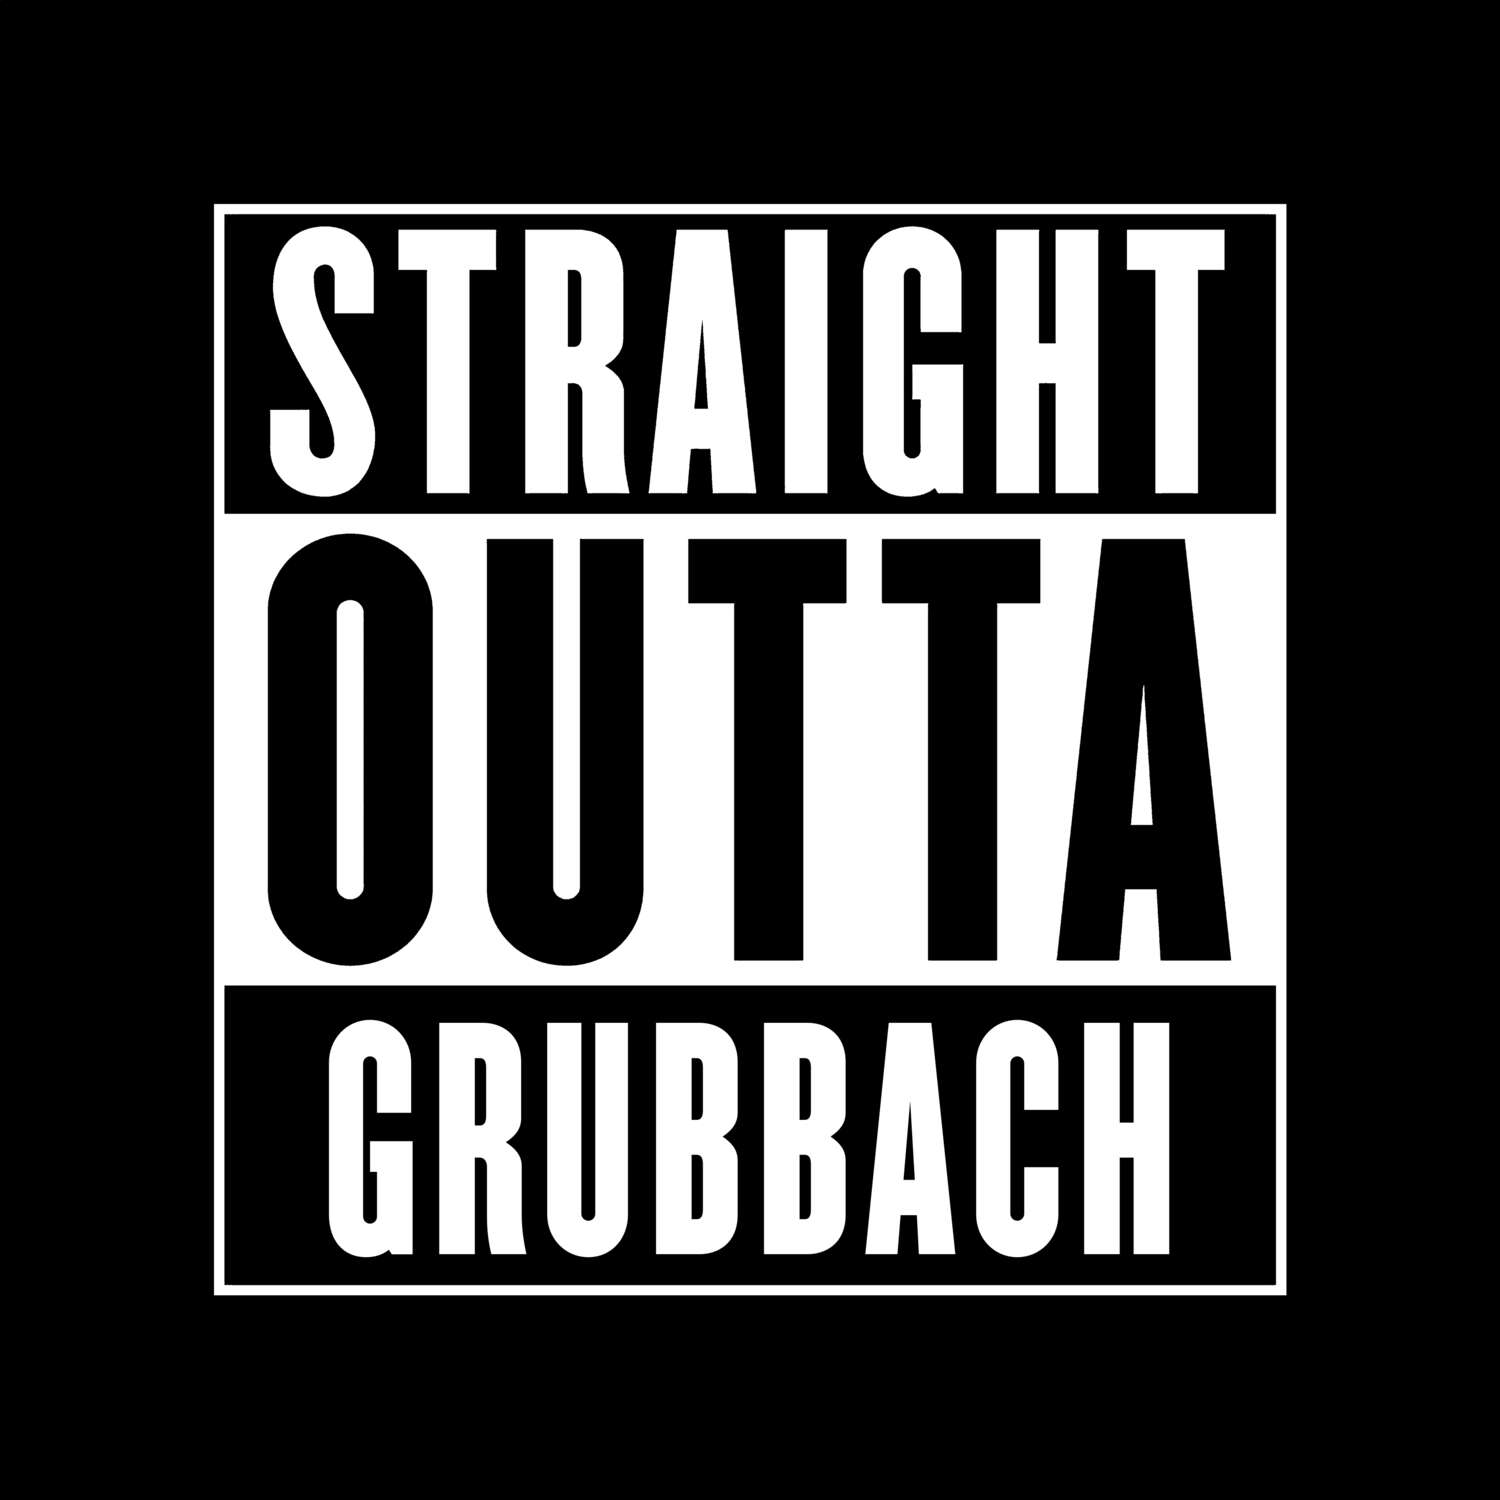 Grubbach T-Shirt »Straight Outta«